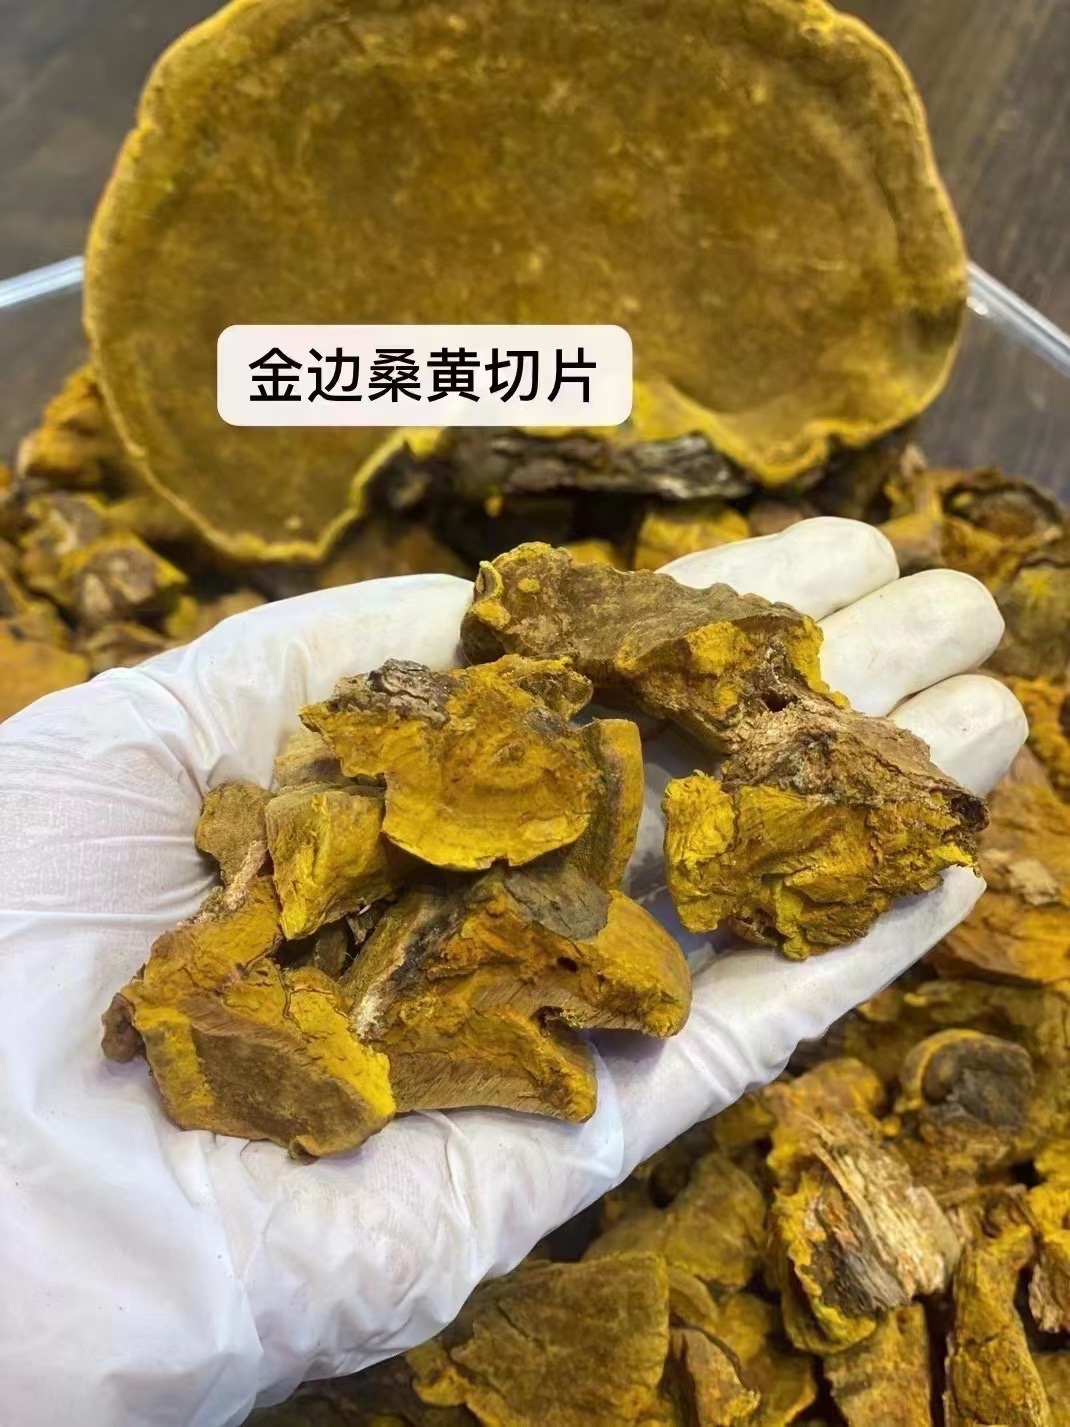 西藏正宗野生 桑黄 整朵特产 正品金边灵芝大桑树 保养茶包